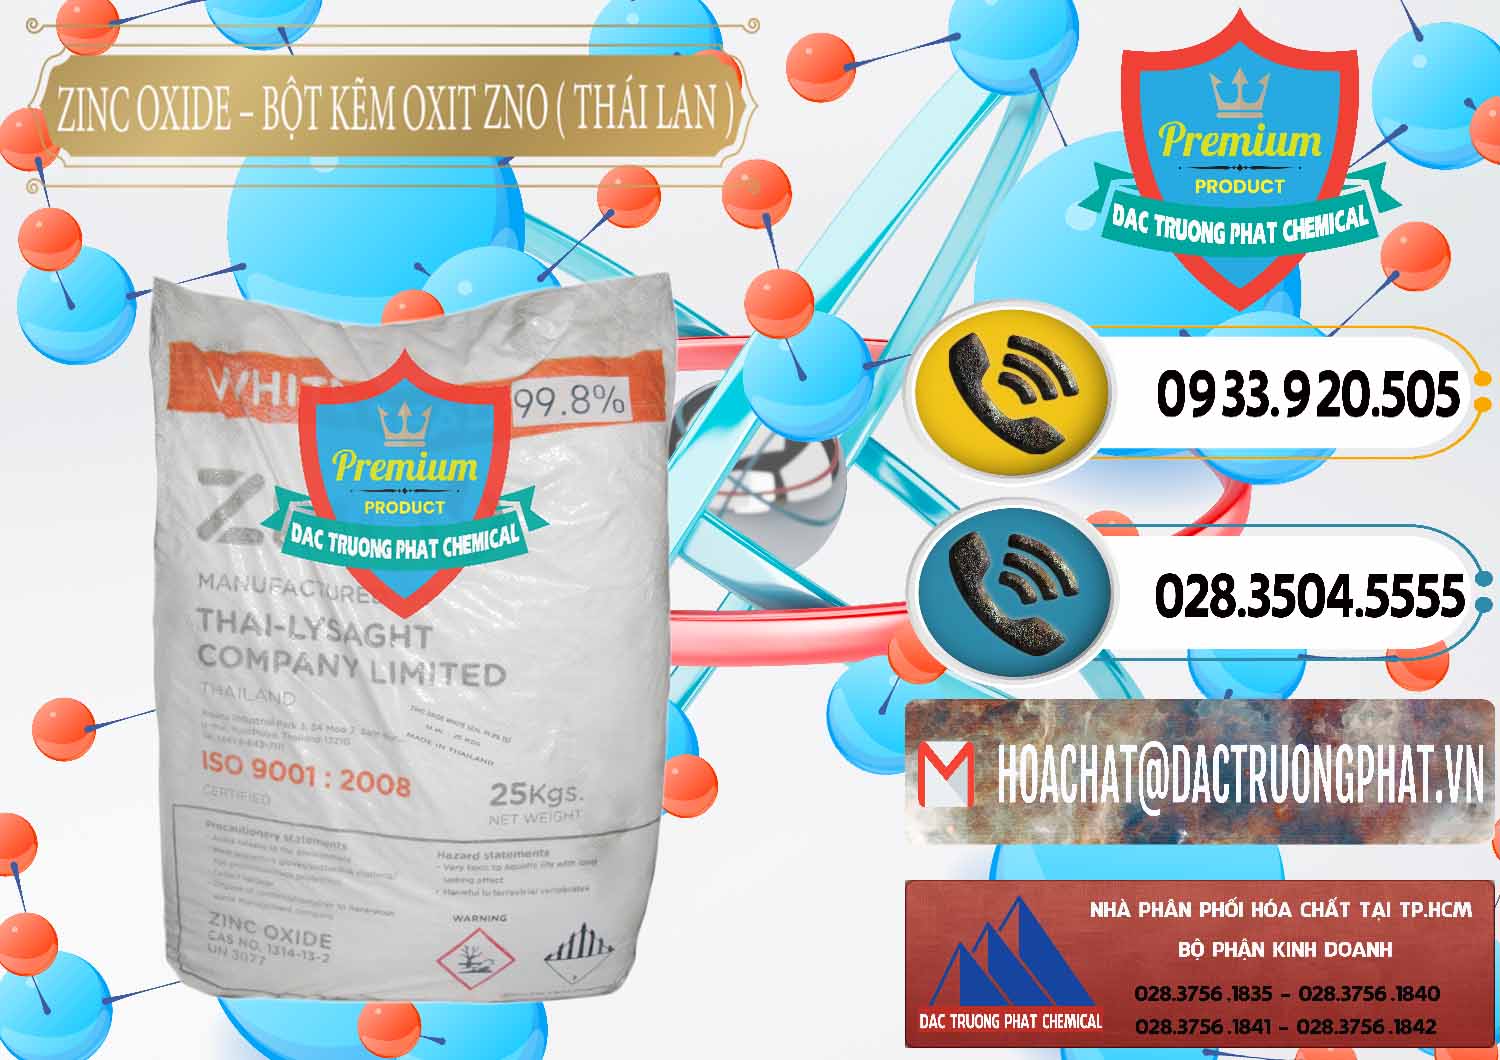 Nơi chuyên bán và cung ứng Zinc Oxide - Bột Kẽm Oxit ZNO Thái Lan Thailand - 0181 - Chuyên kinh doanh & phân phối hóa chất tại TP.HCM - hoachatdetnhuom.vn